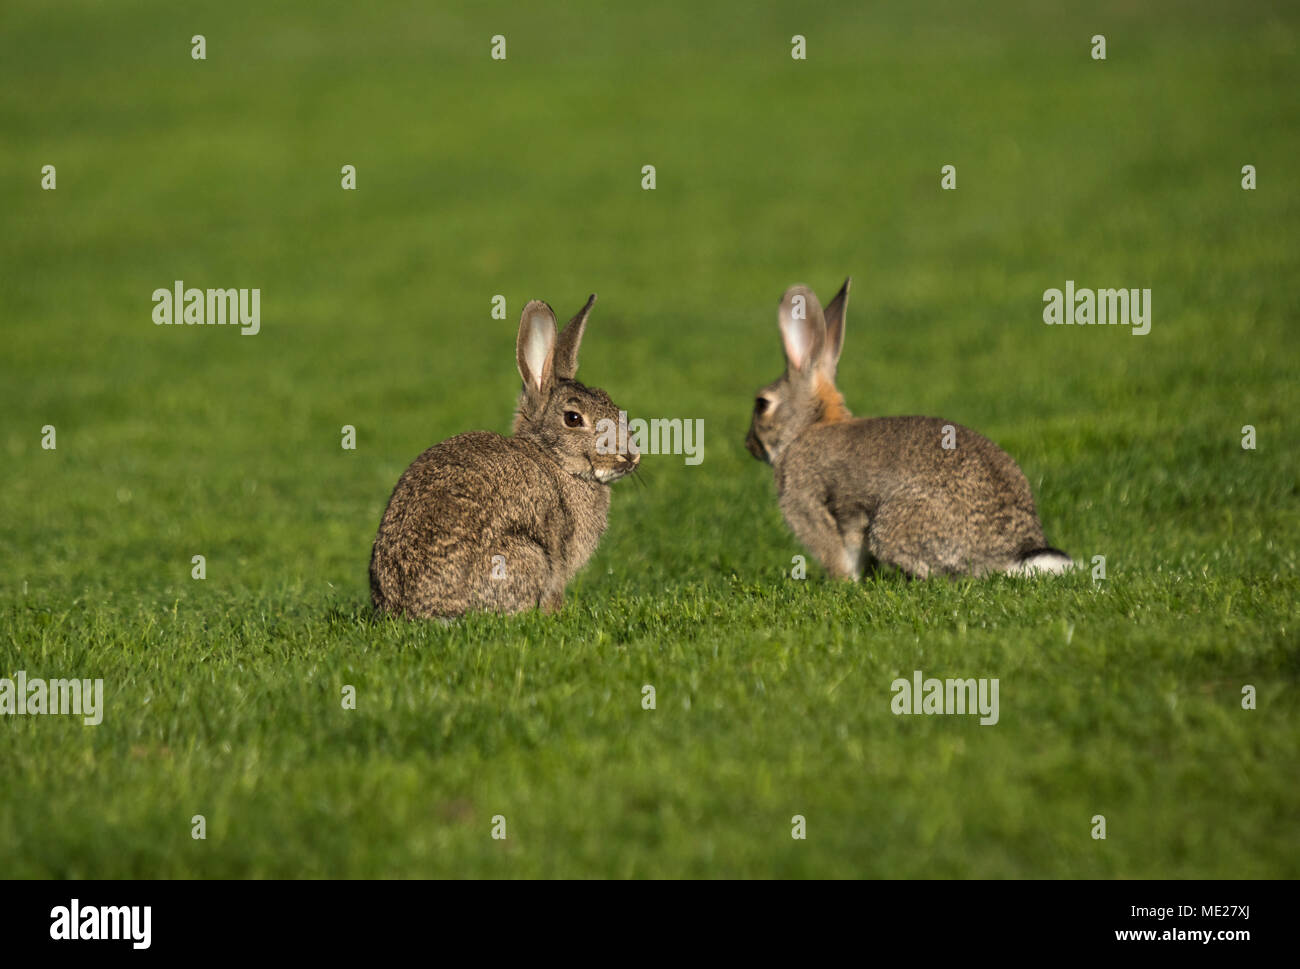 Par de conejos comiendo en el verde. Fotografía tomada en Madrid, España. Foto de stock